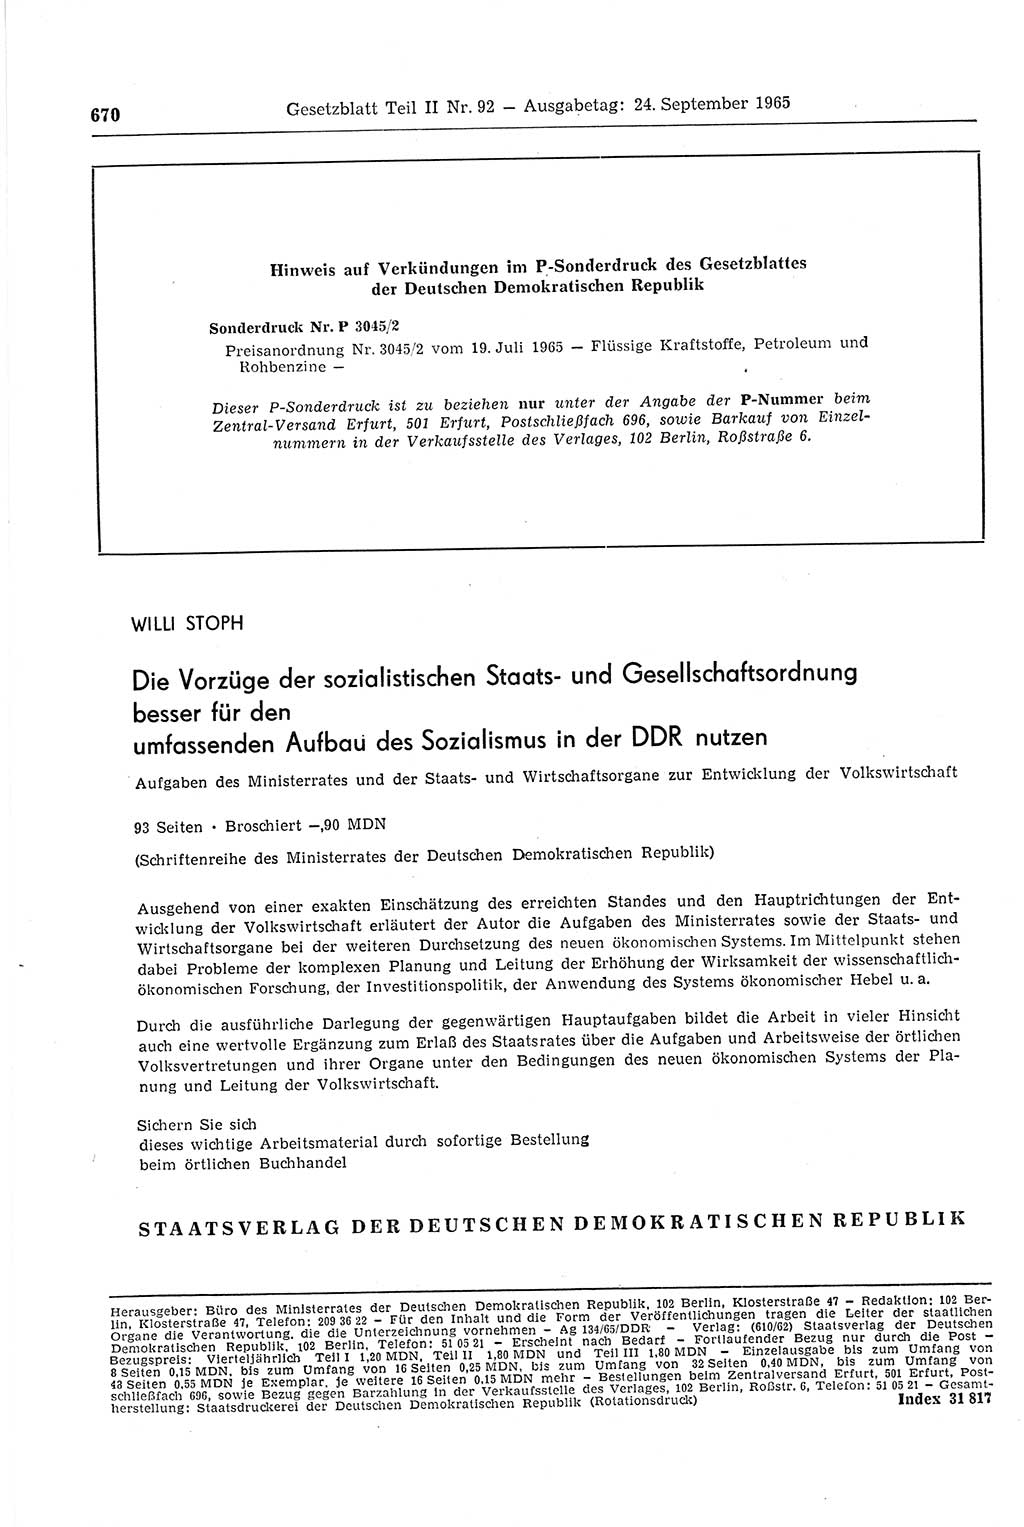 Gesetzblatt (GBl.) der Deutschen Demokratischen Republik (DDR) Teil ⅠⅠ 1965, Seite 670 (GBl. DDR ⅠⅠ 1965, S. 670)